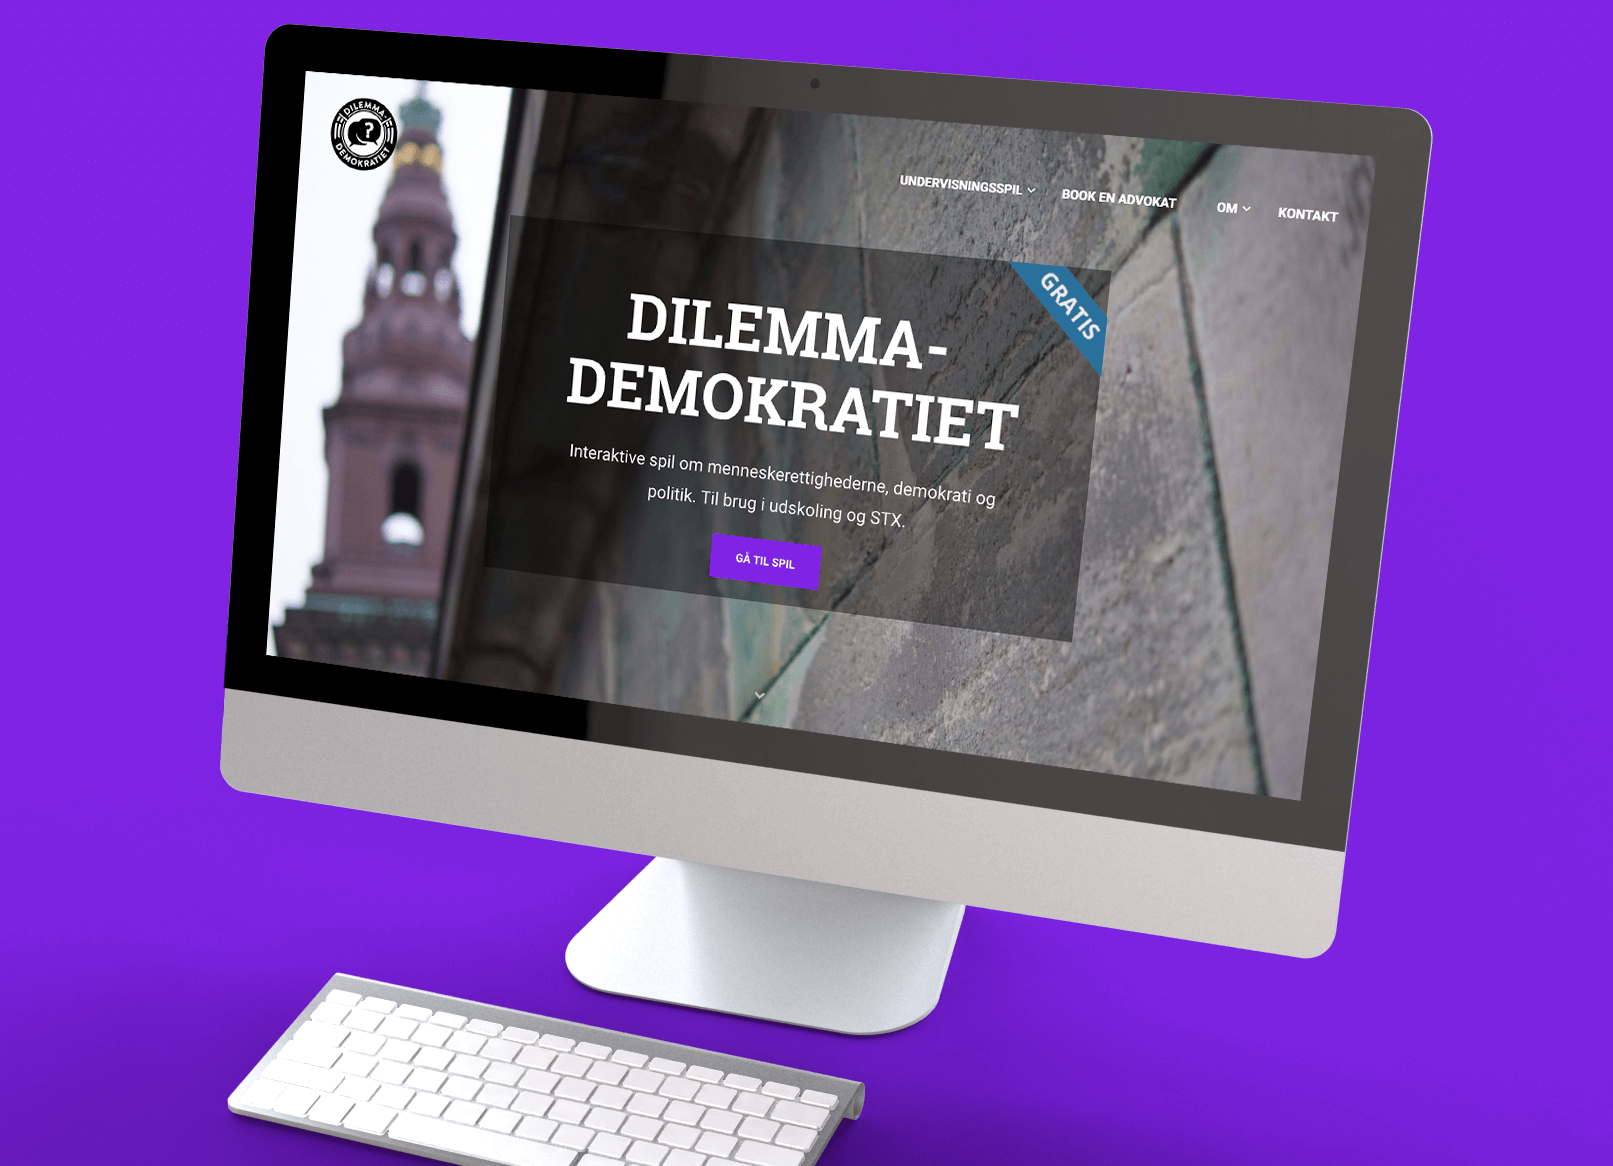 Dilemma Demokratiet website